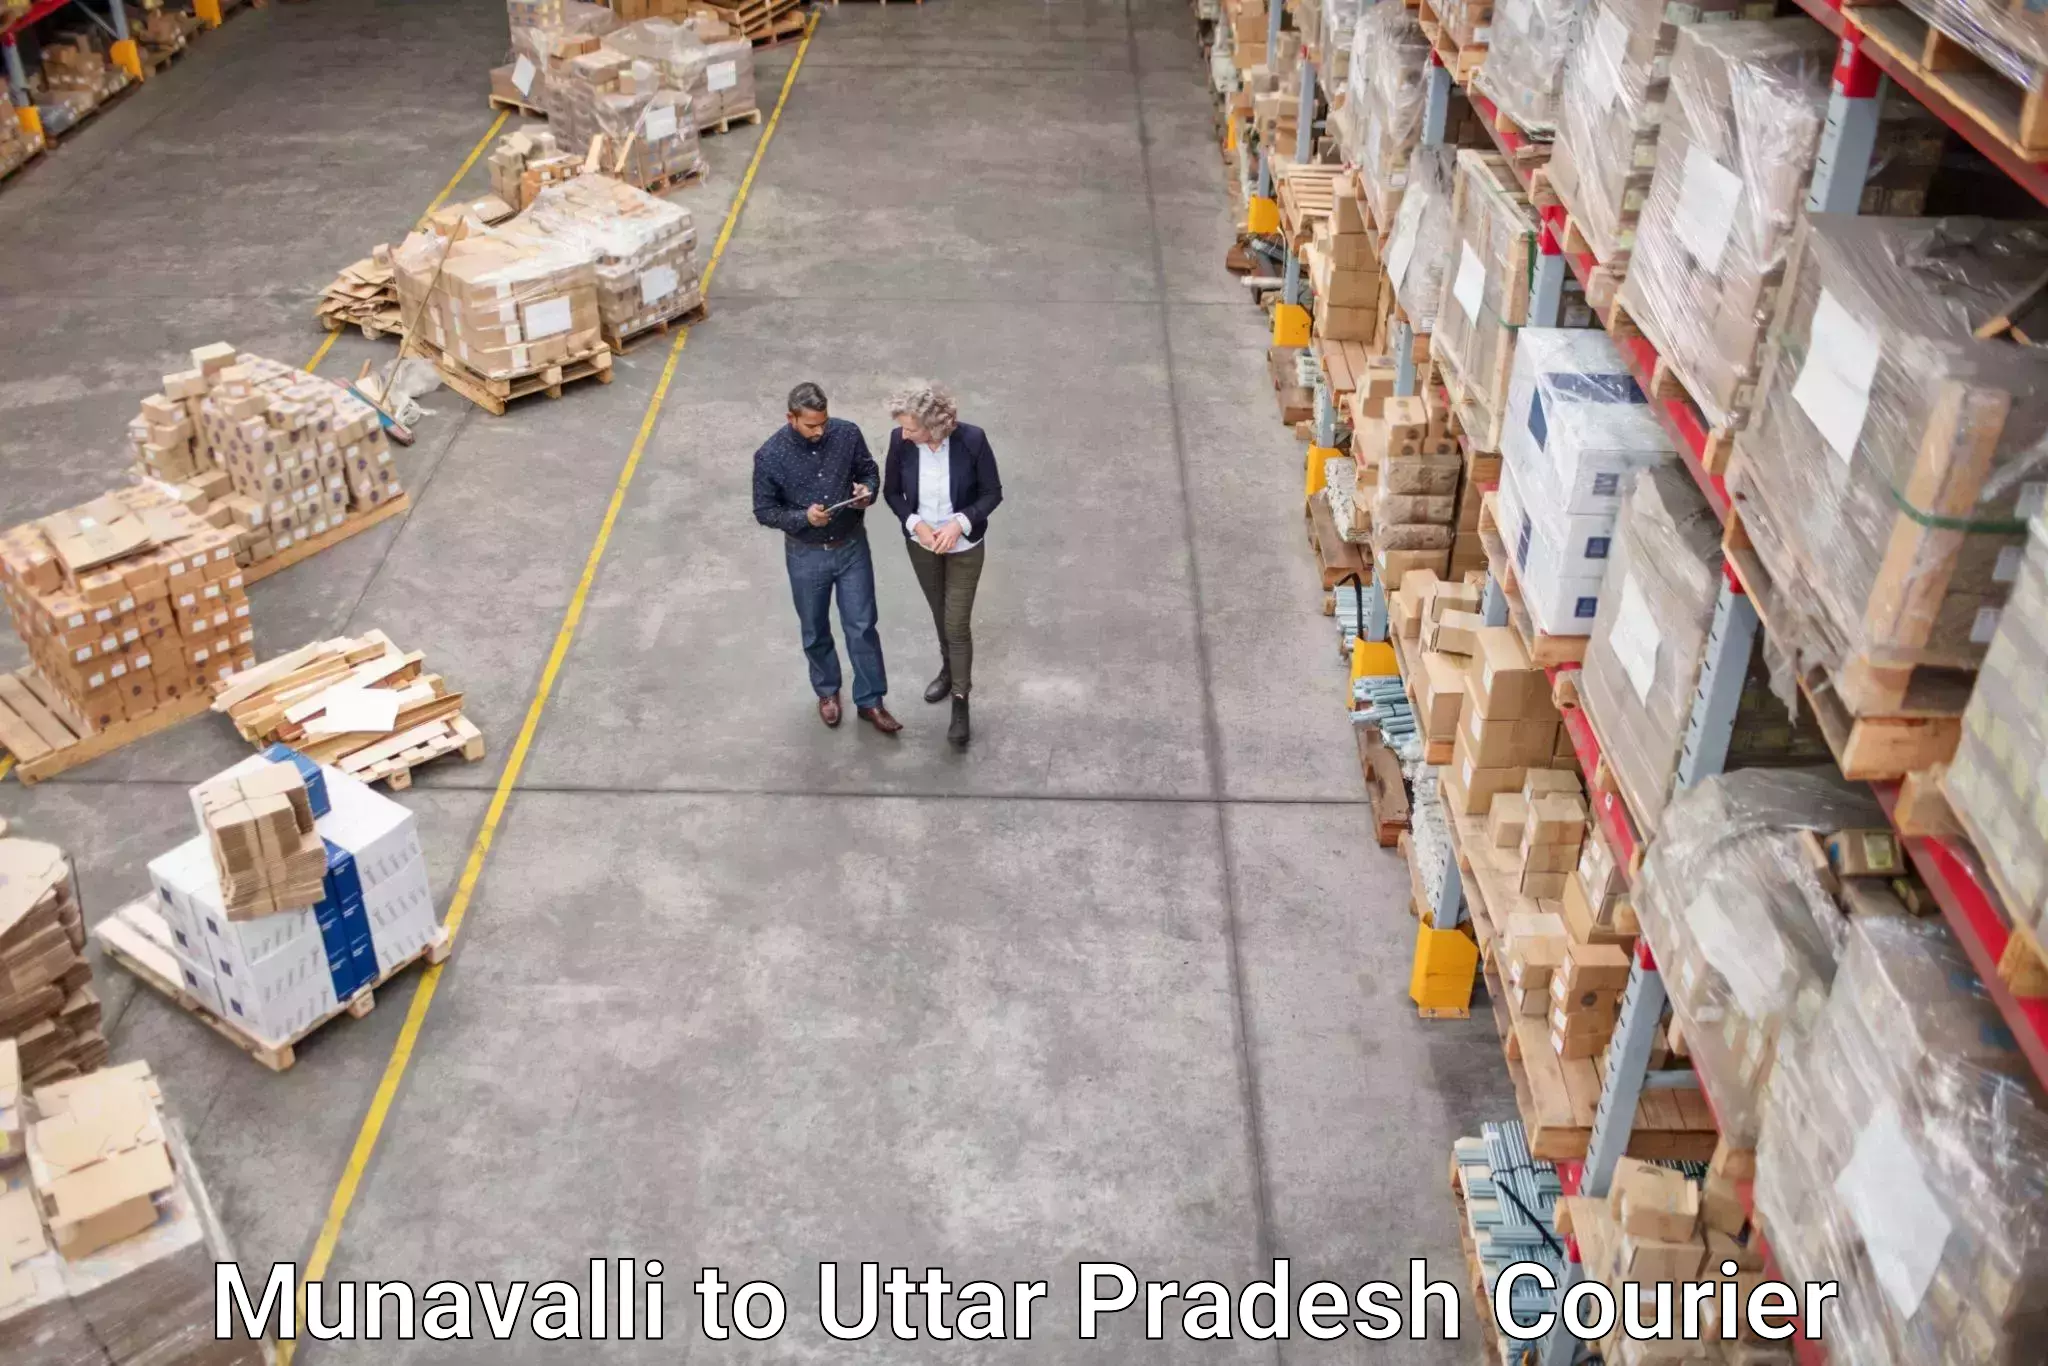 Versatile courier offerings Munavalli to Gorakhpur